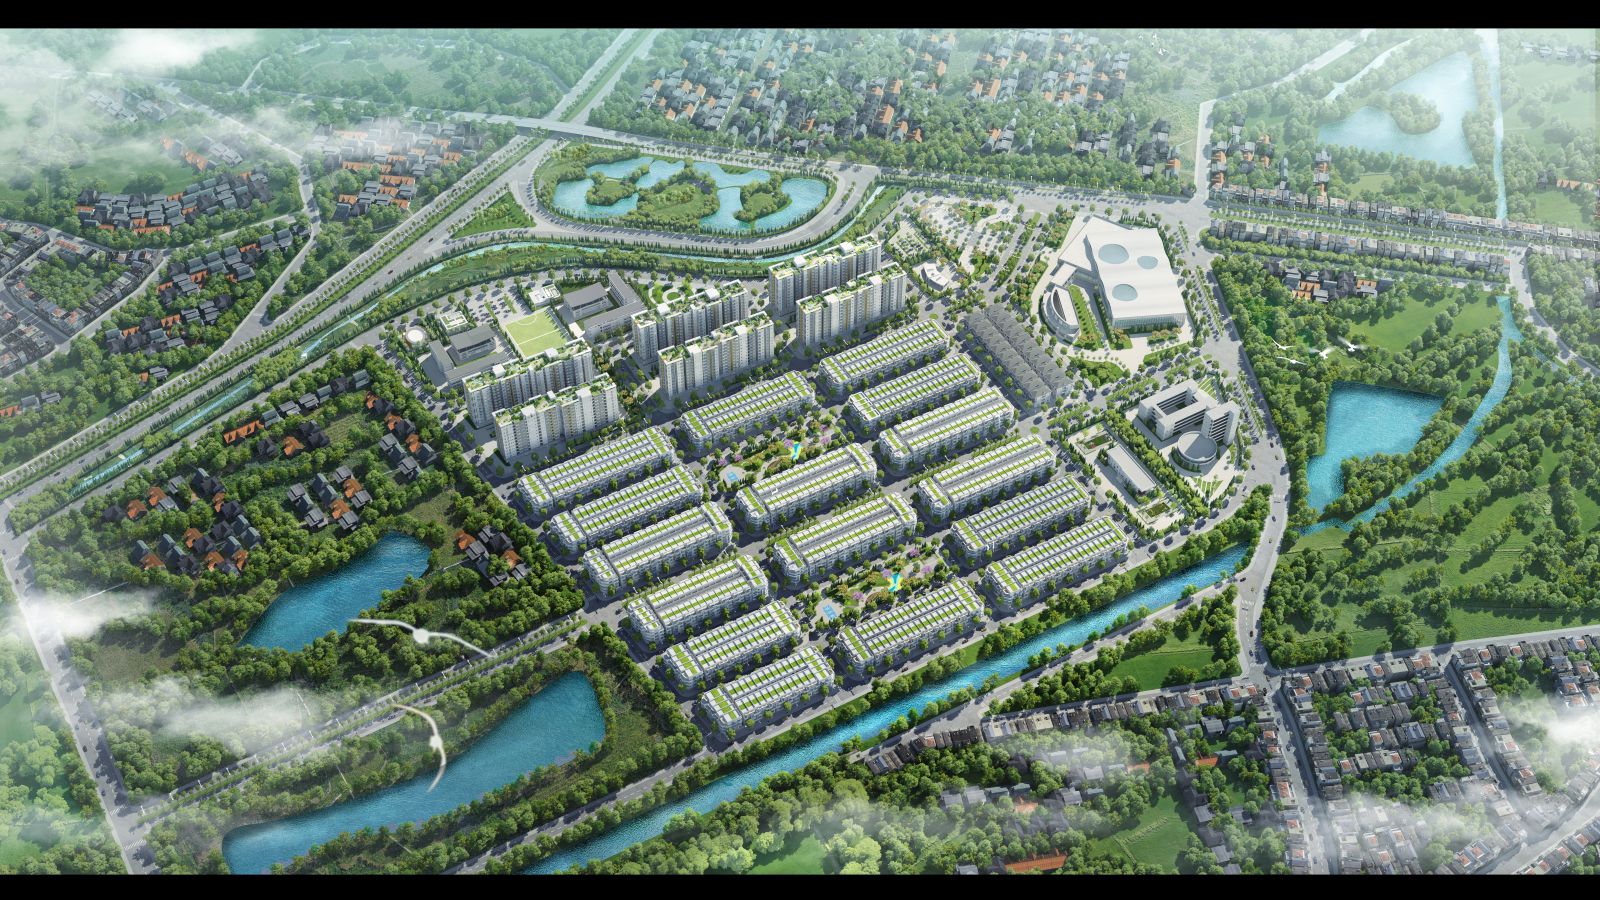 Him Lam Green Park – dự án khu đô thị hoàn chỉnh đầu tiên của Him Lam tại Bắc Ninh